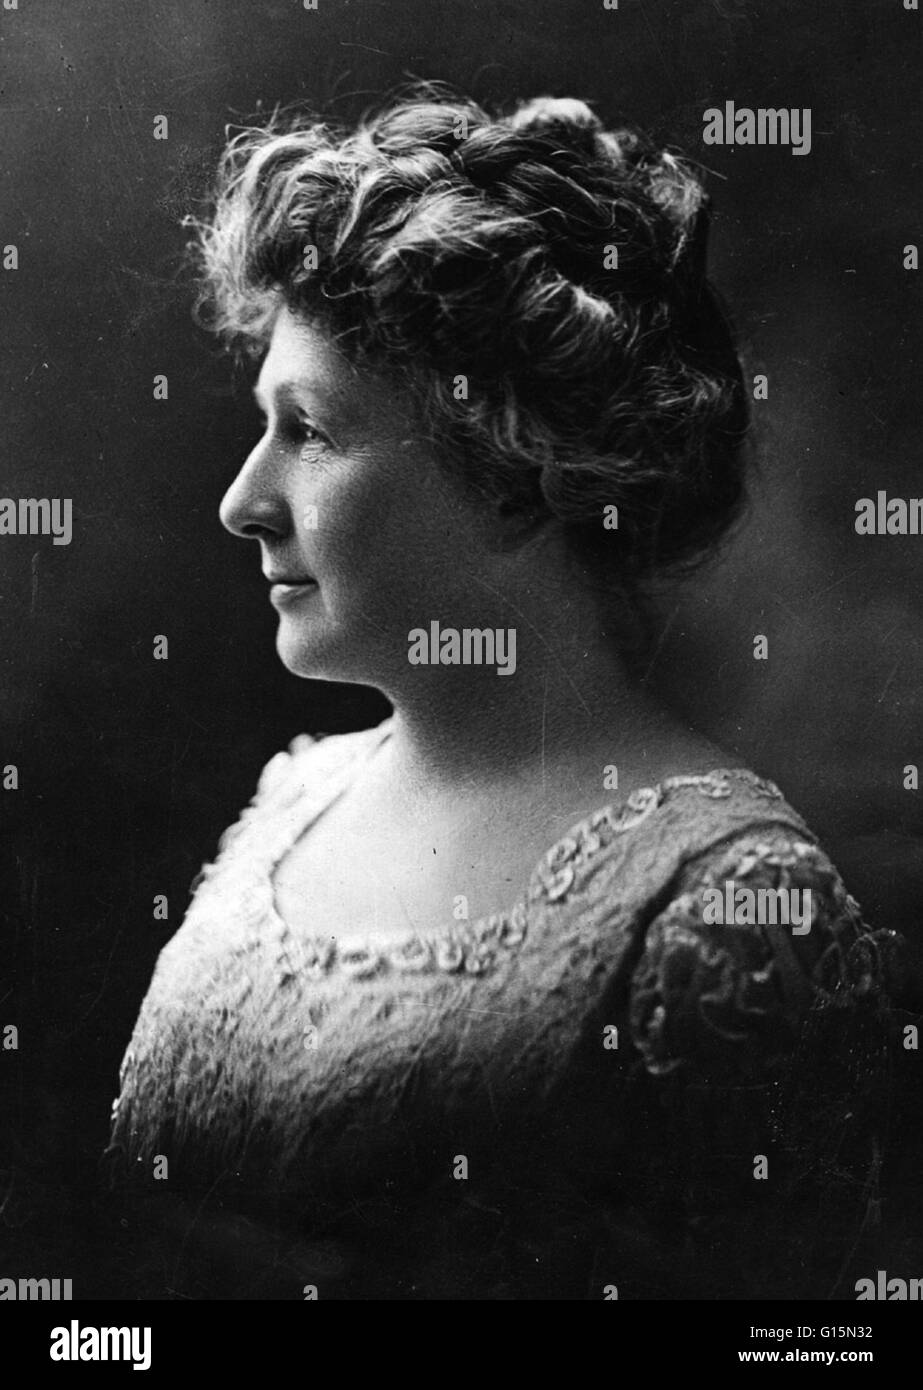 Porträt im Jahr 1922 genommen. Annie Jump Cannon (11. Dezember 1863 - 13. April 1941) war ein US-amerikanischer Astronom. Im Jahre 1880 wurde Kanone an Wellesley College in Massachusetts, verschickt, während welcher Zeit sie mit Scharlach befallen war und wurde fast vollständig de Stockfoto